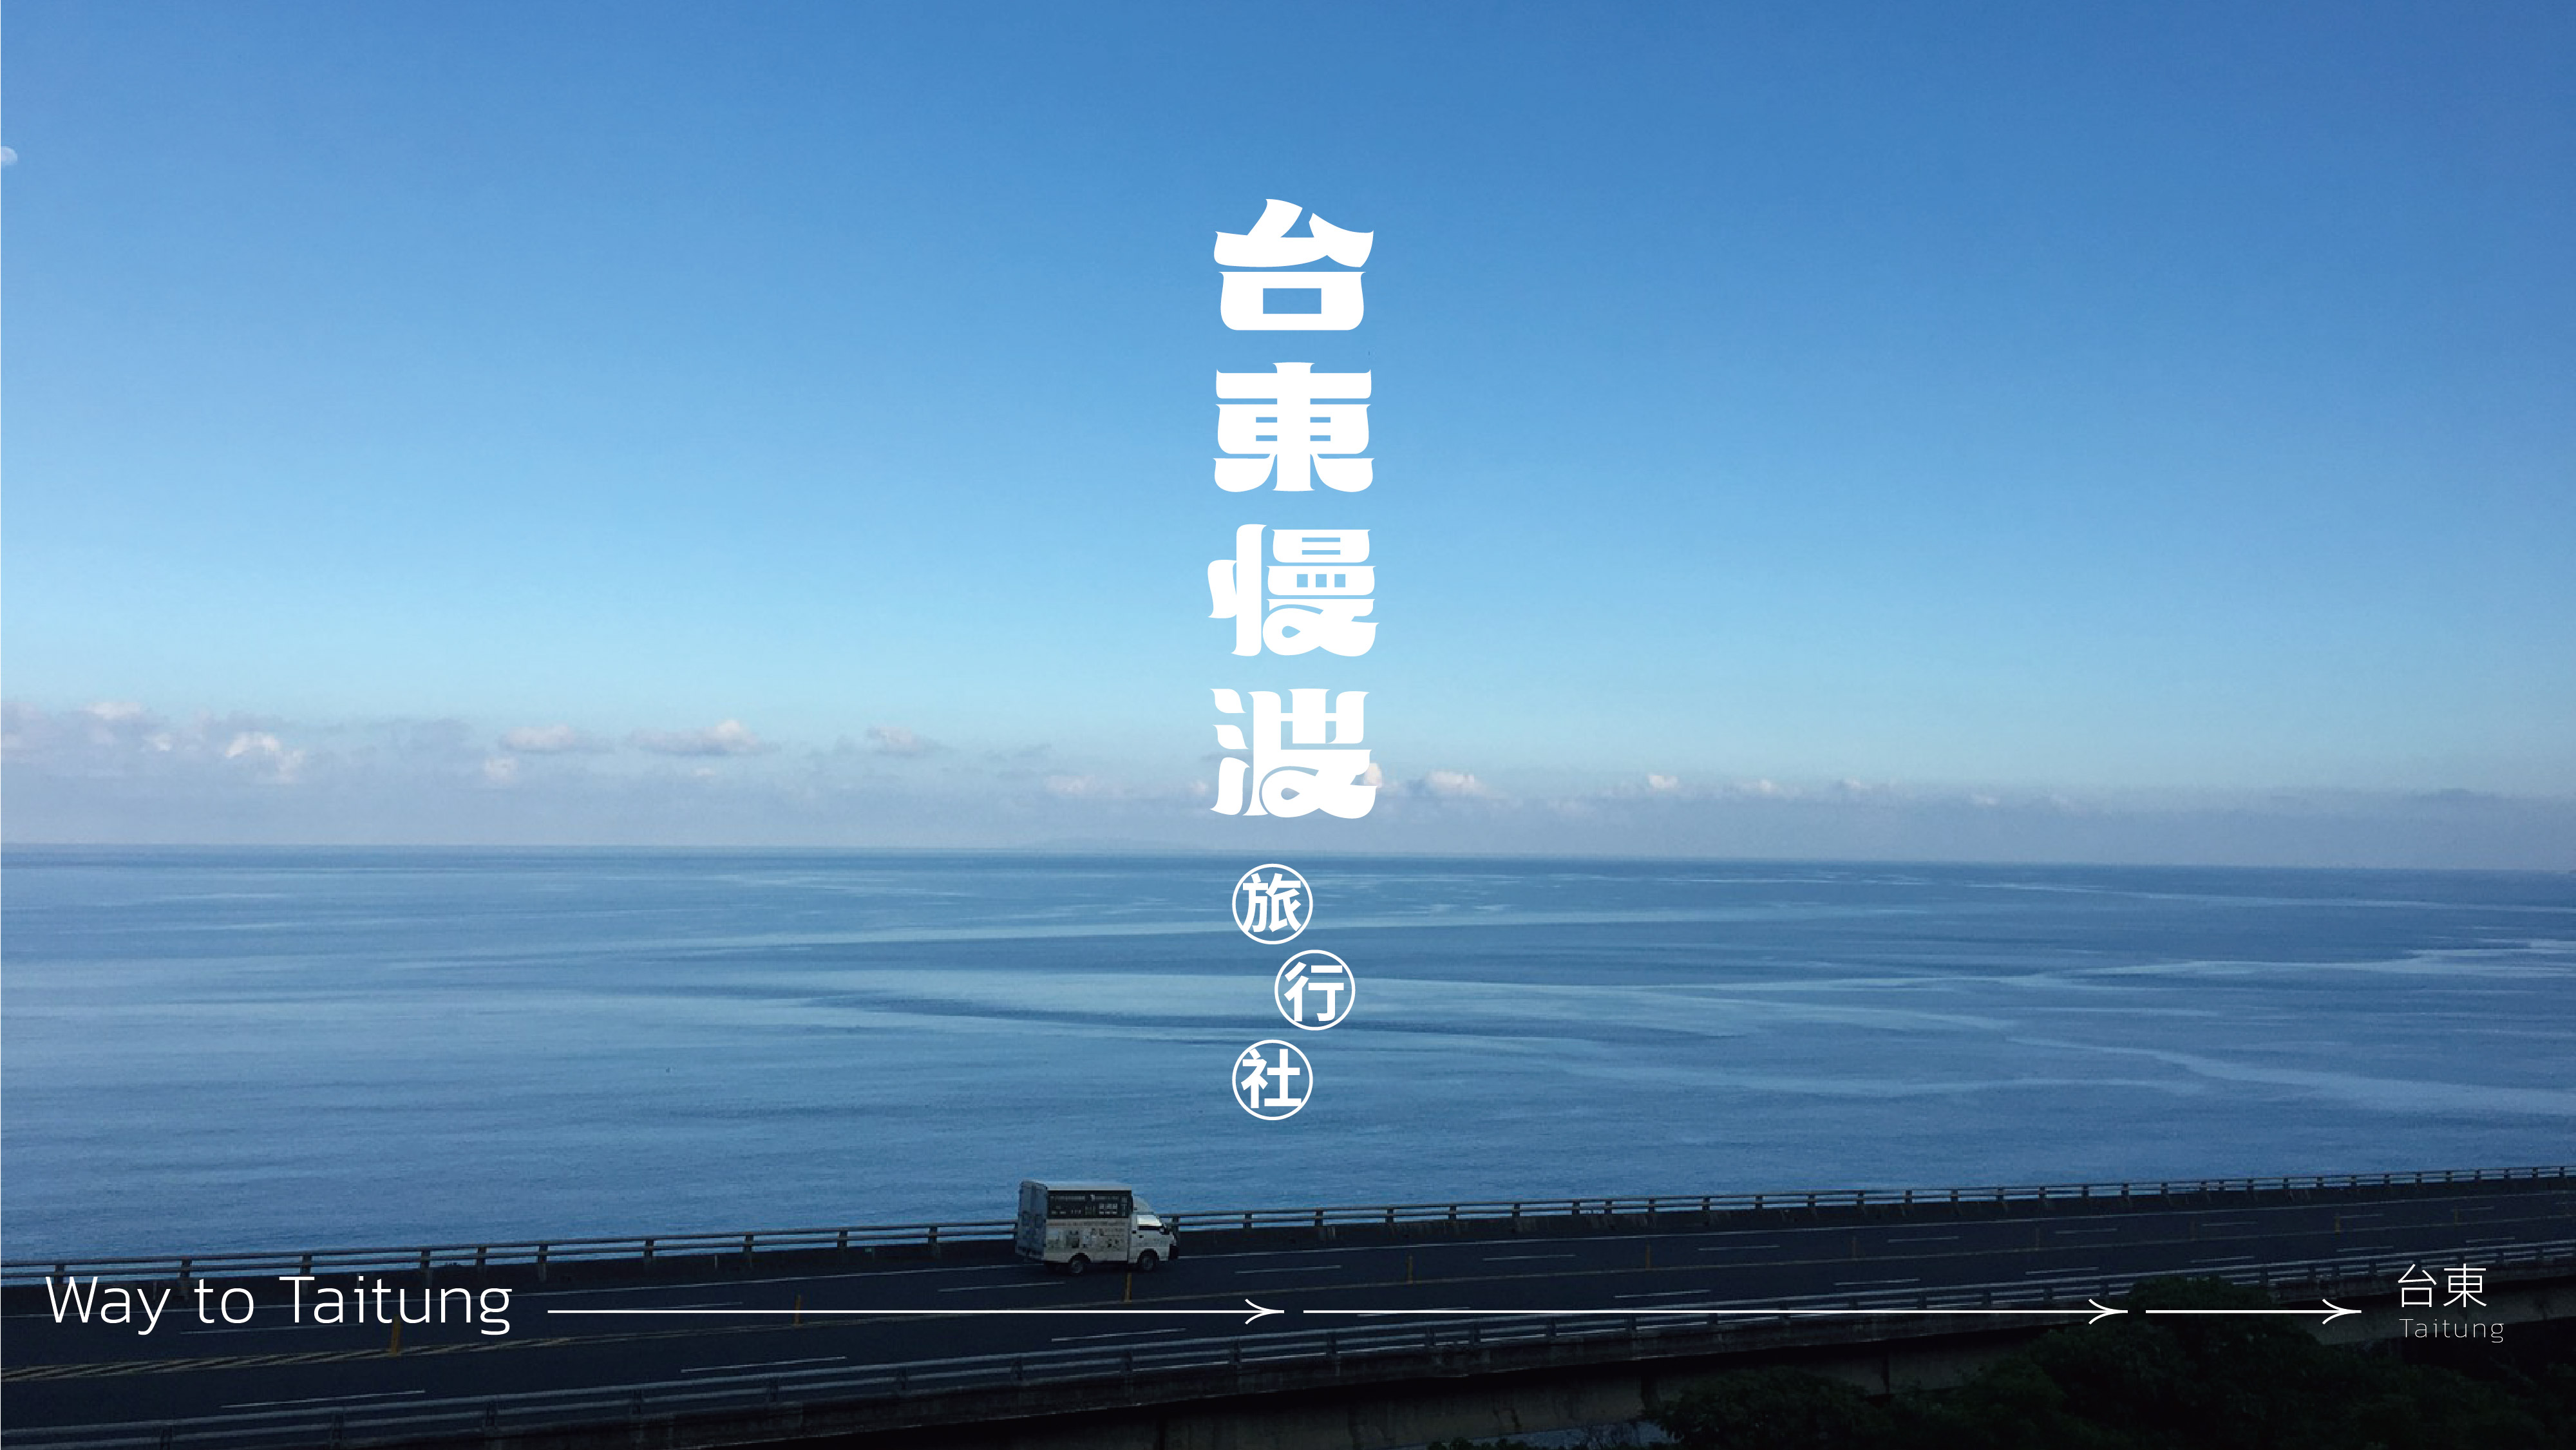 ▎一路向東 Way To Taitung — 跟著聲音旅行 走一趟想念的台東光景​